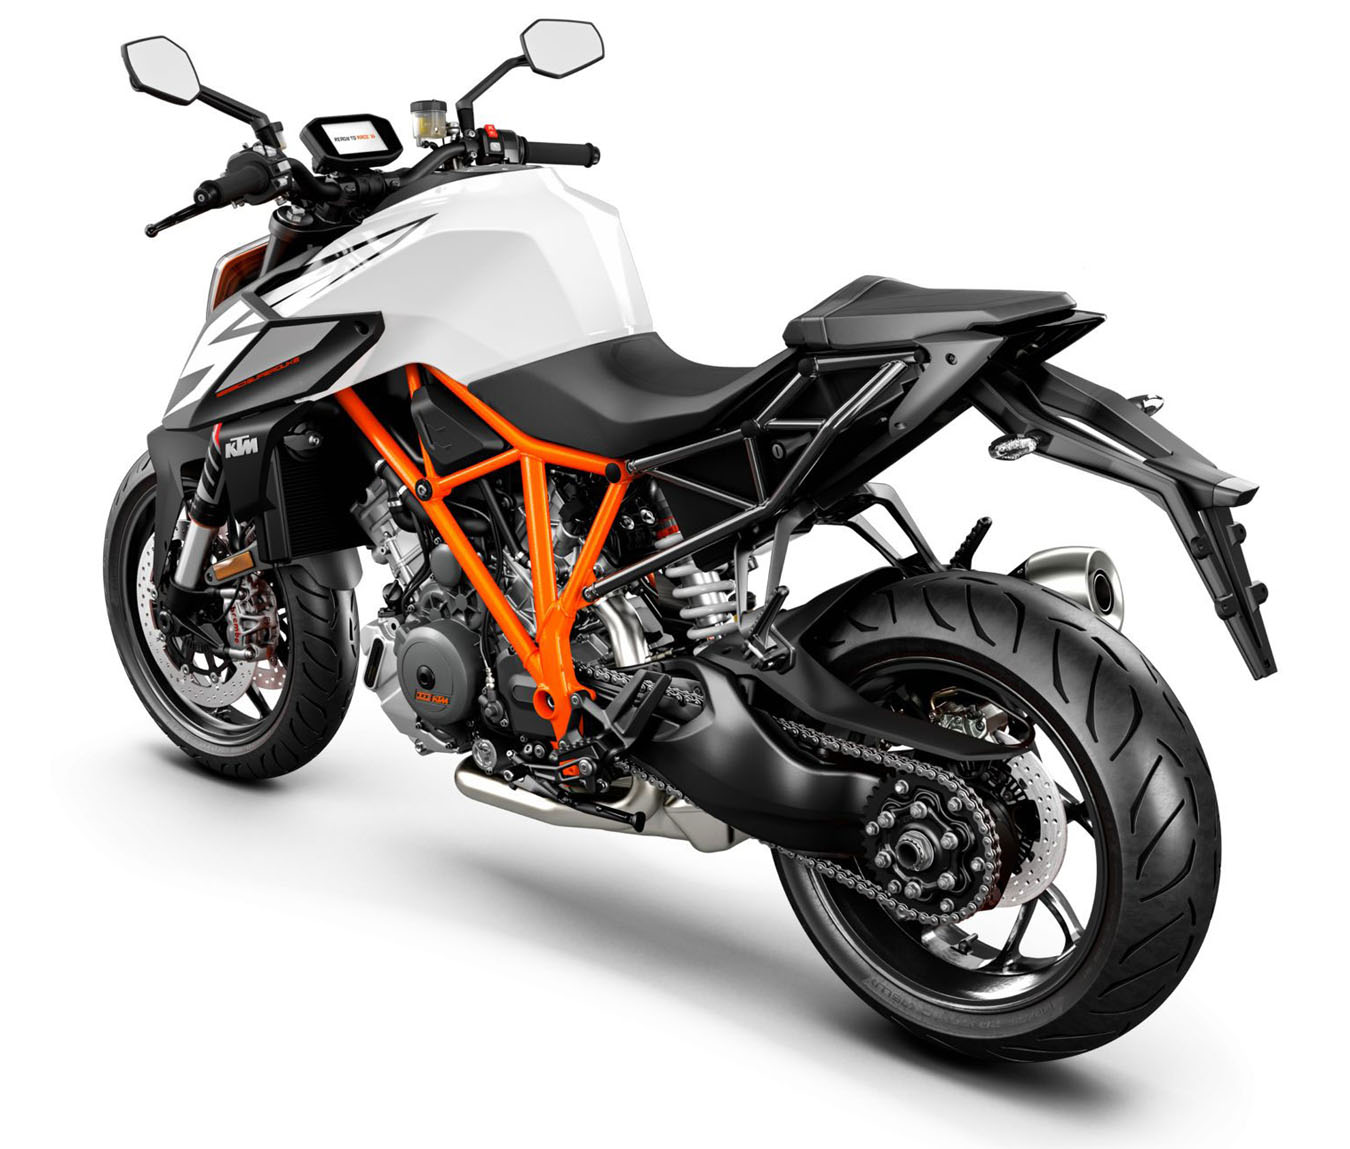 https://www.motorcyclespecs.co.za/Gallery_A-L_16/KTM-1290-Super-Duke-R-18-03.jpg